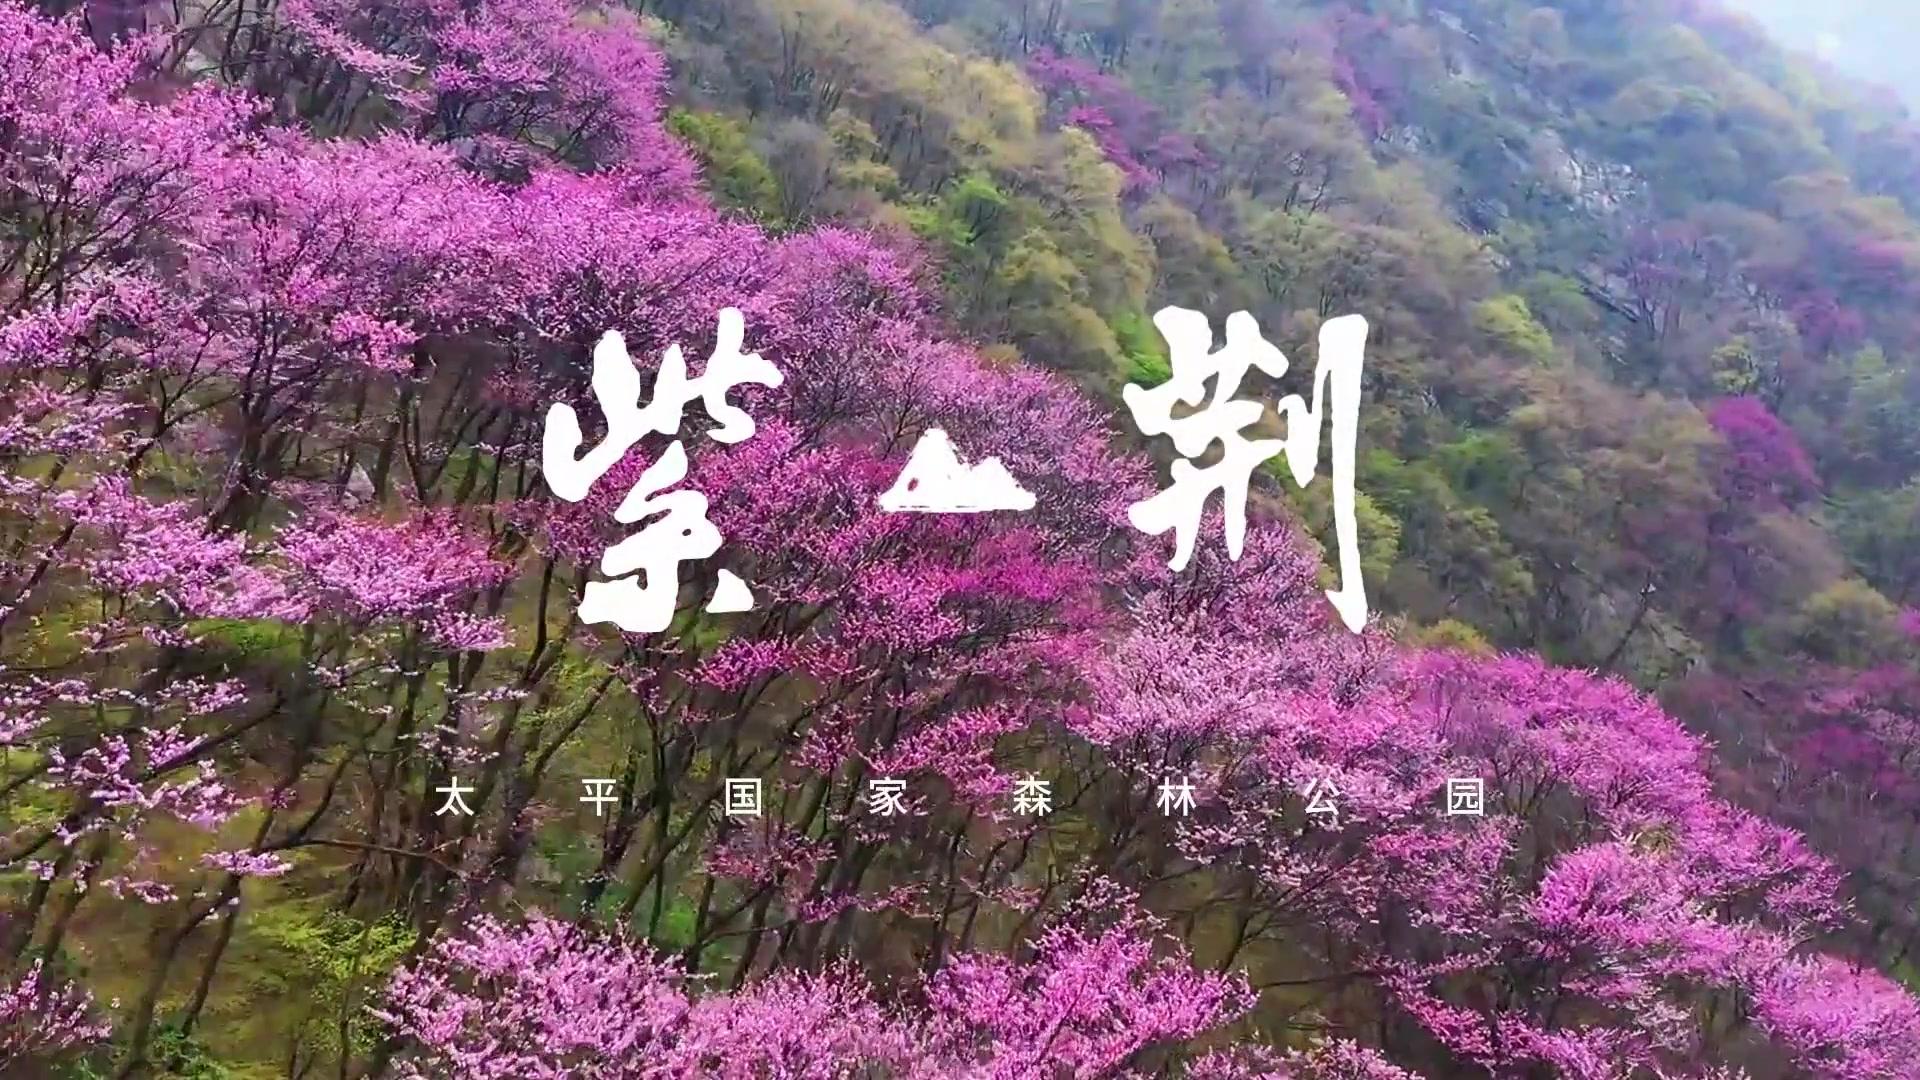 一舟影像:春天的紫荆山公园 原来可以这么美